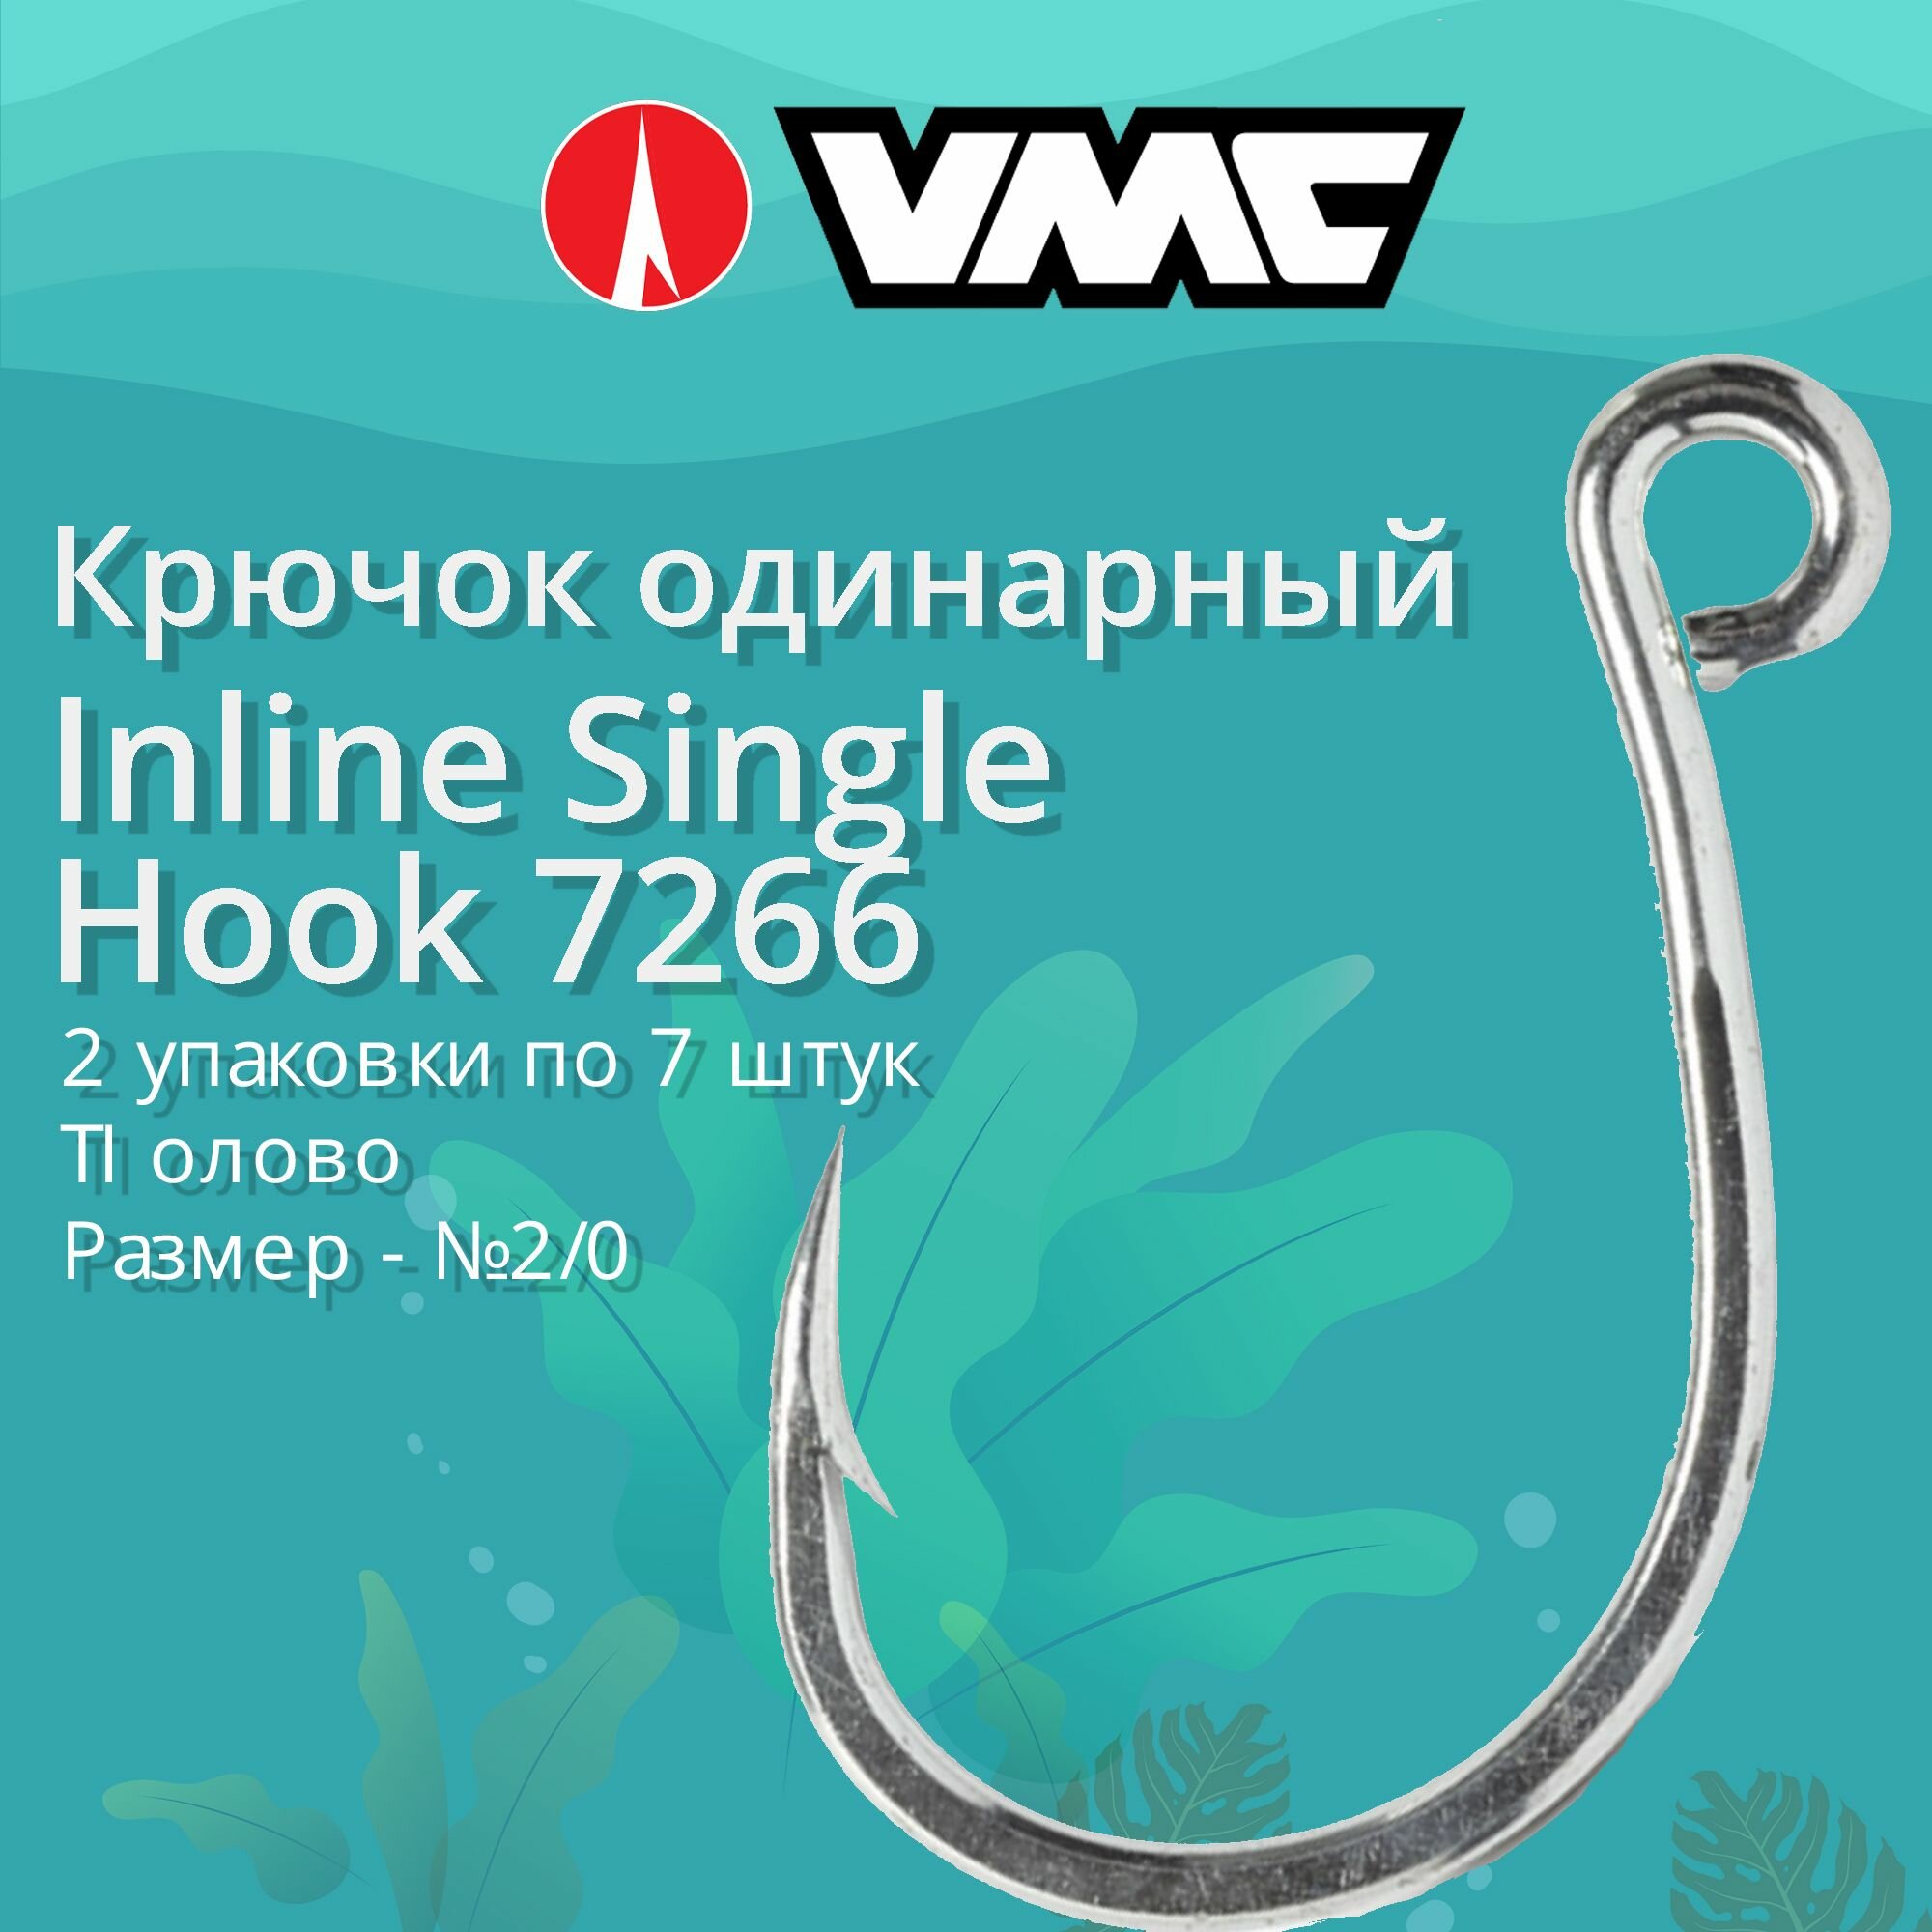 Крючки для рыбалки (одинарный) VMC Inline Single Hook 7266 TI (олово) №2/0, 2 упаковки по 7 штук